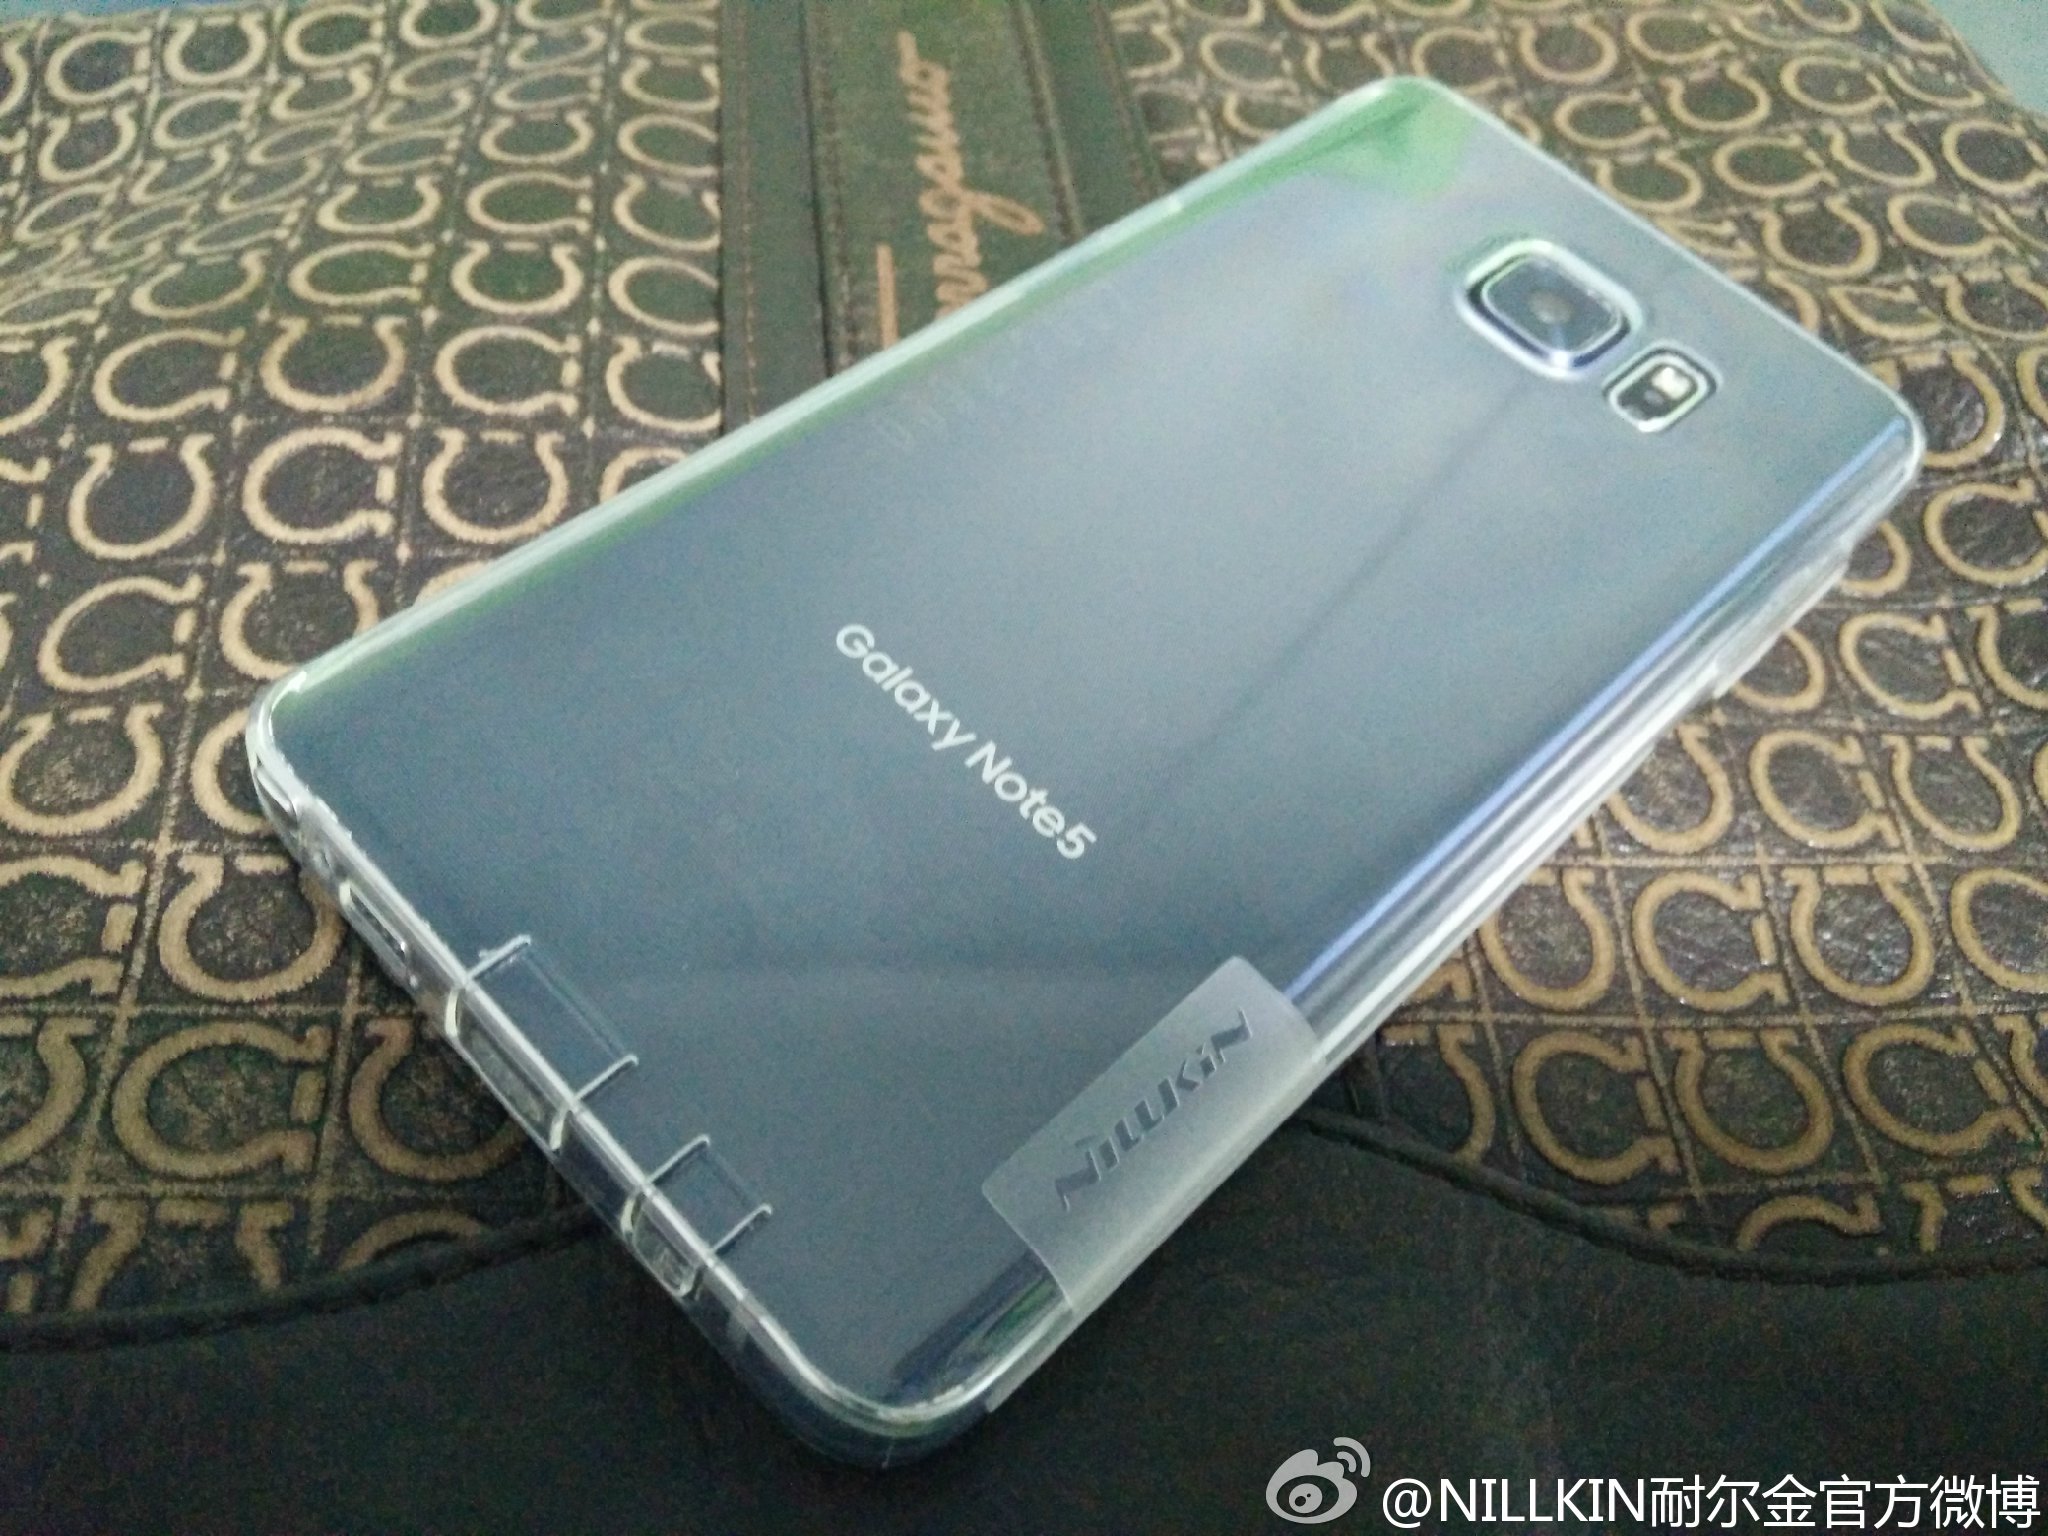 Samsung-Galaxy-Note-5-foto-leaked-1.jpg